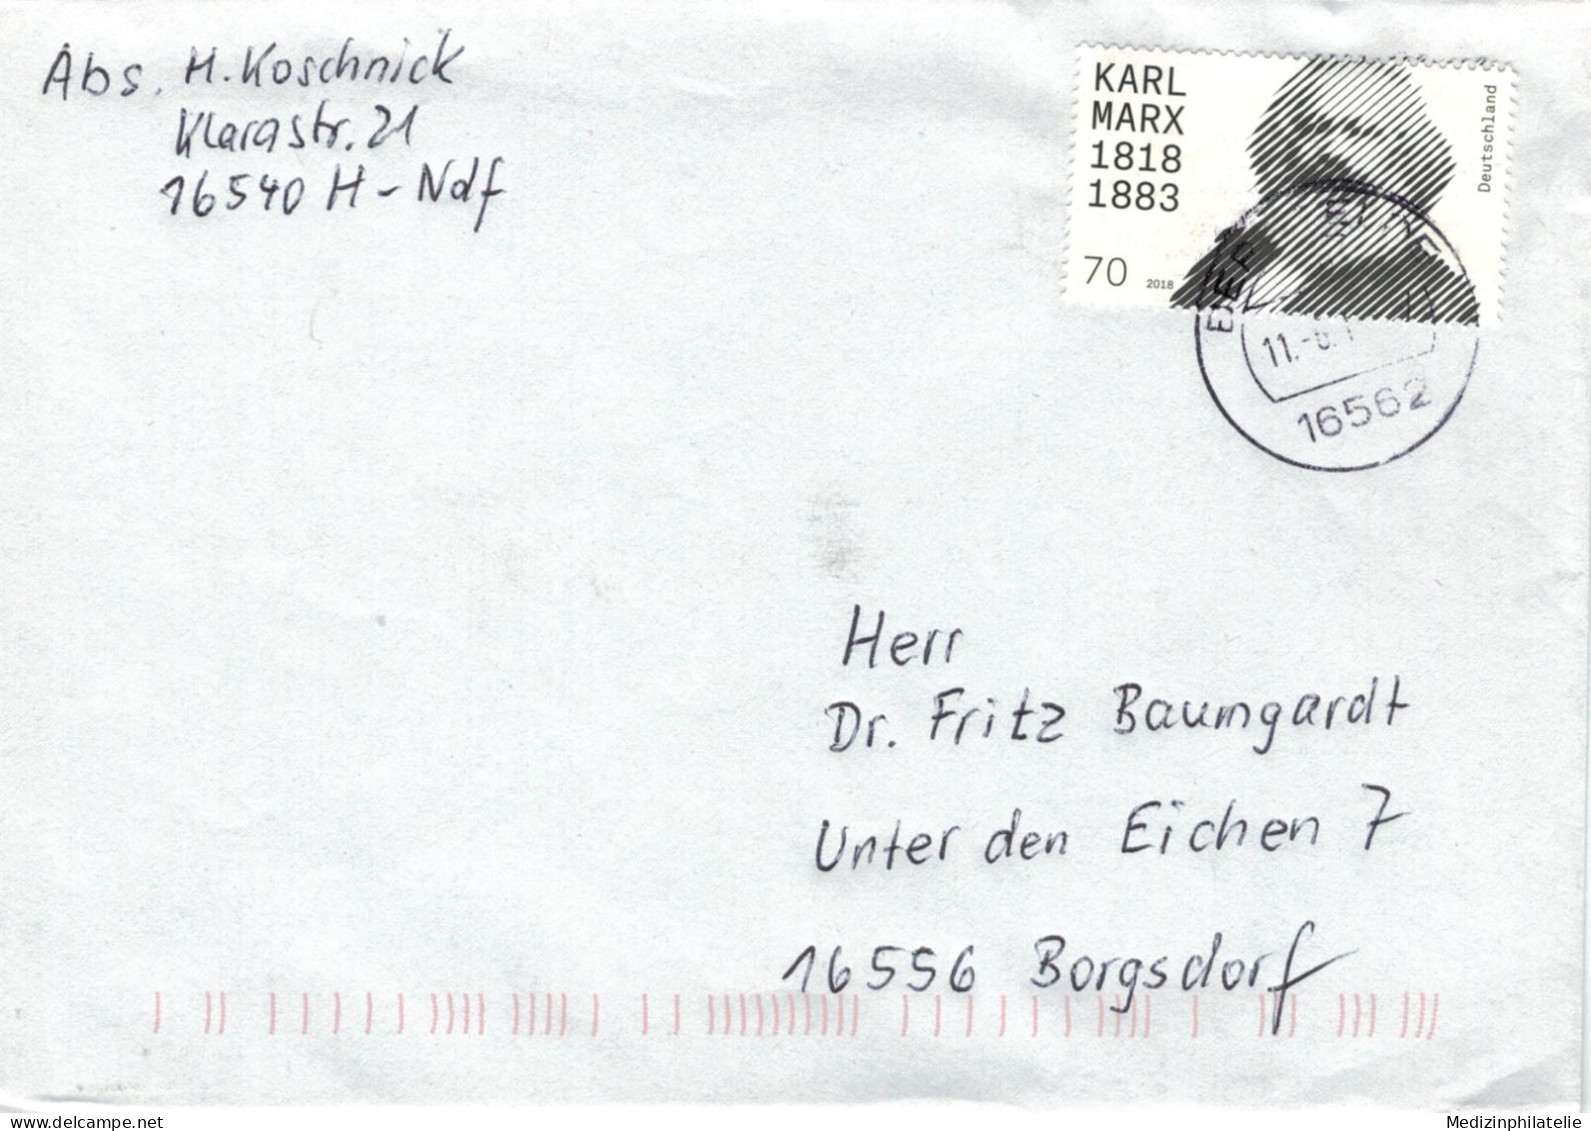 Karl Marx Deutscher Philosoph, Ökonom, Gesellschaftstheoretiker - 16562 Bergfelde - Vgl. Marxismus - Karl Marx